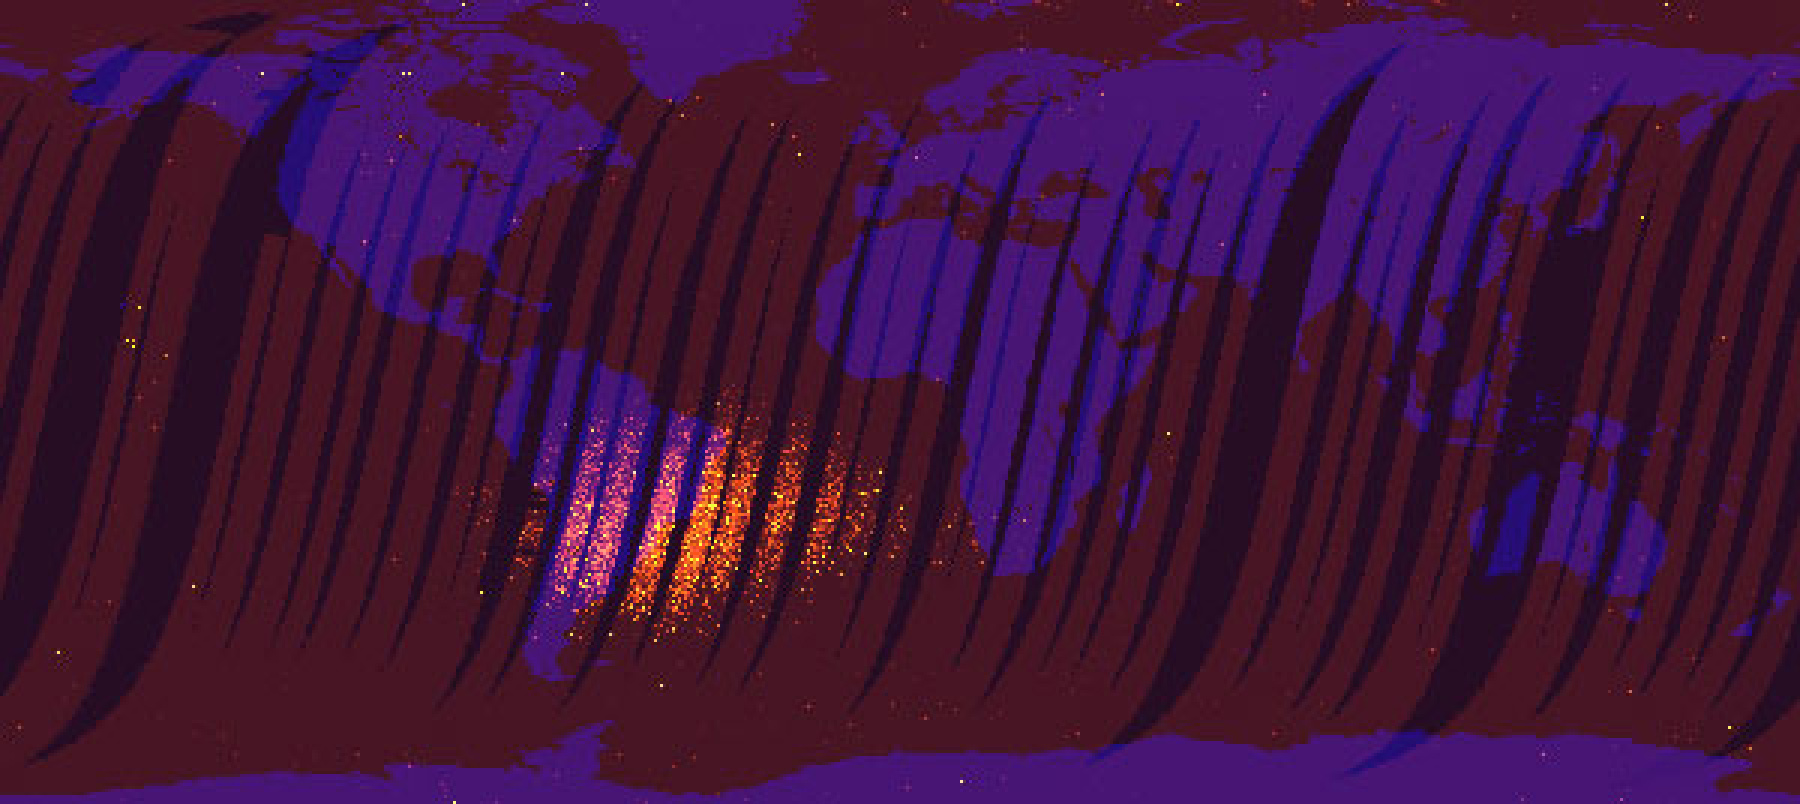 Mapa, która powstała z obserwacji instrumentu MISR, wykonanych w czasie, gdy optyka sensora była zakryta. Teoretycznie detektory MISR nie powinny były widzieć nic (poza własnym „szumem”). Tymczasem... nakreśliły piękny obraz zasięgu anomalii południowoatlantyckiej. Rys. NASA/JPL